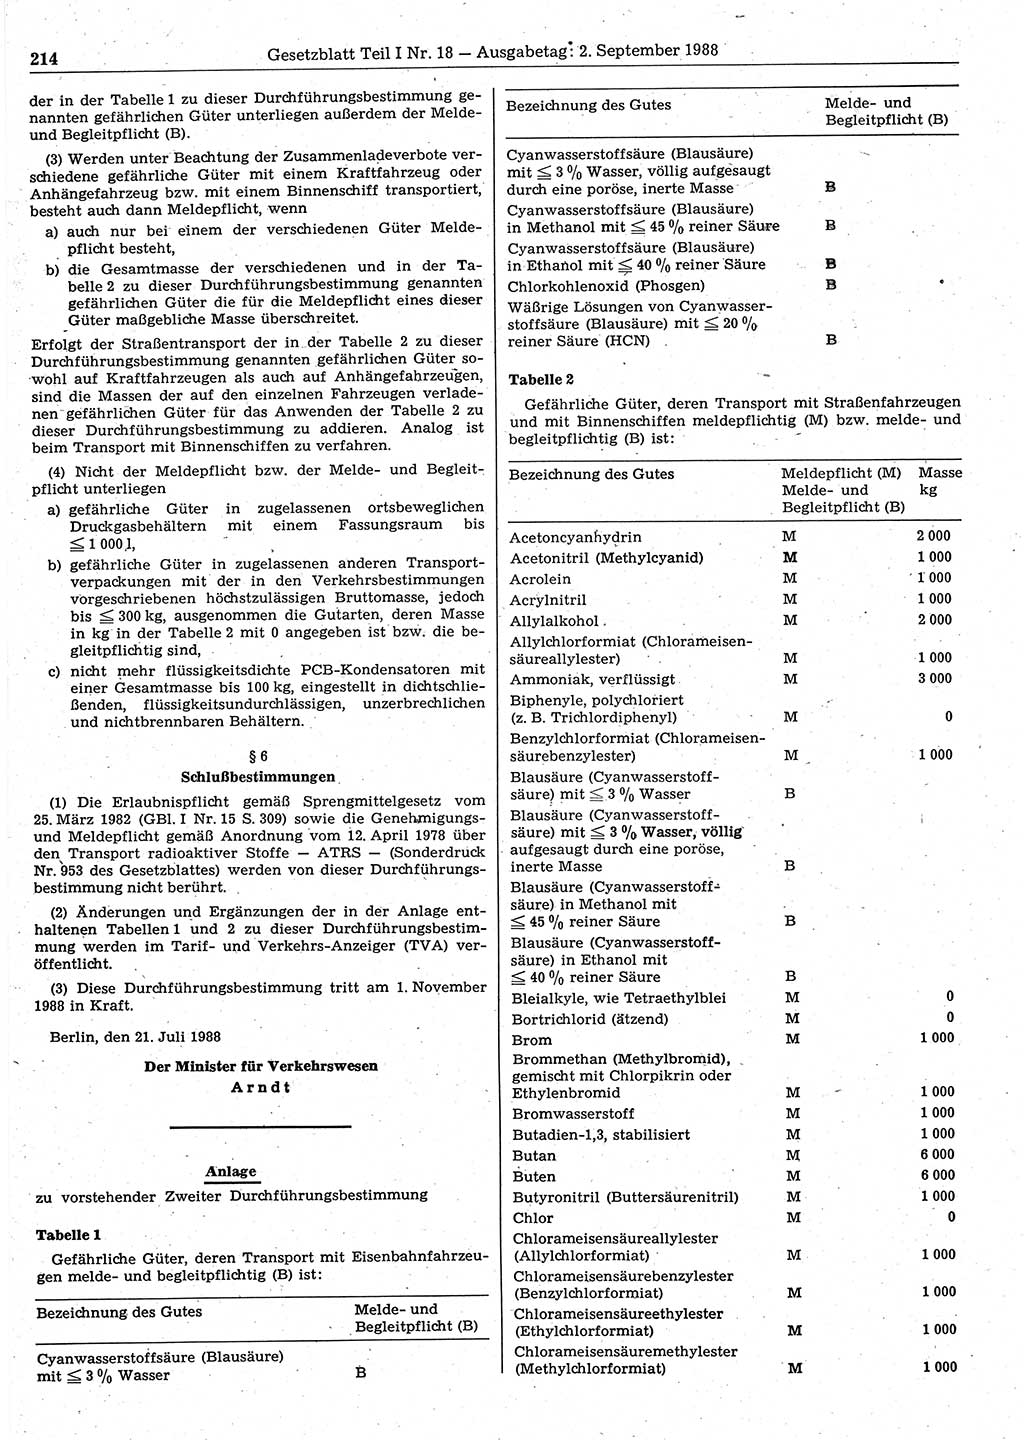 Gesetzblatt (GBl.) der Deutschen Demokratischen Republik (DDR) Teil Ⅰ 1988, Seite 214 (GBl. DDR Ⅰ 1988, S. 214)